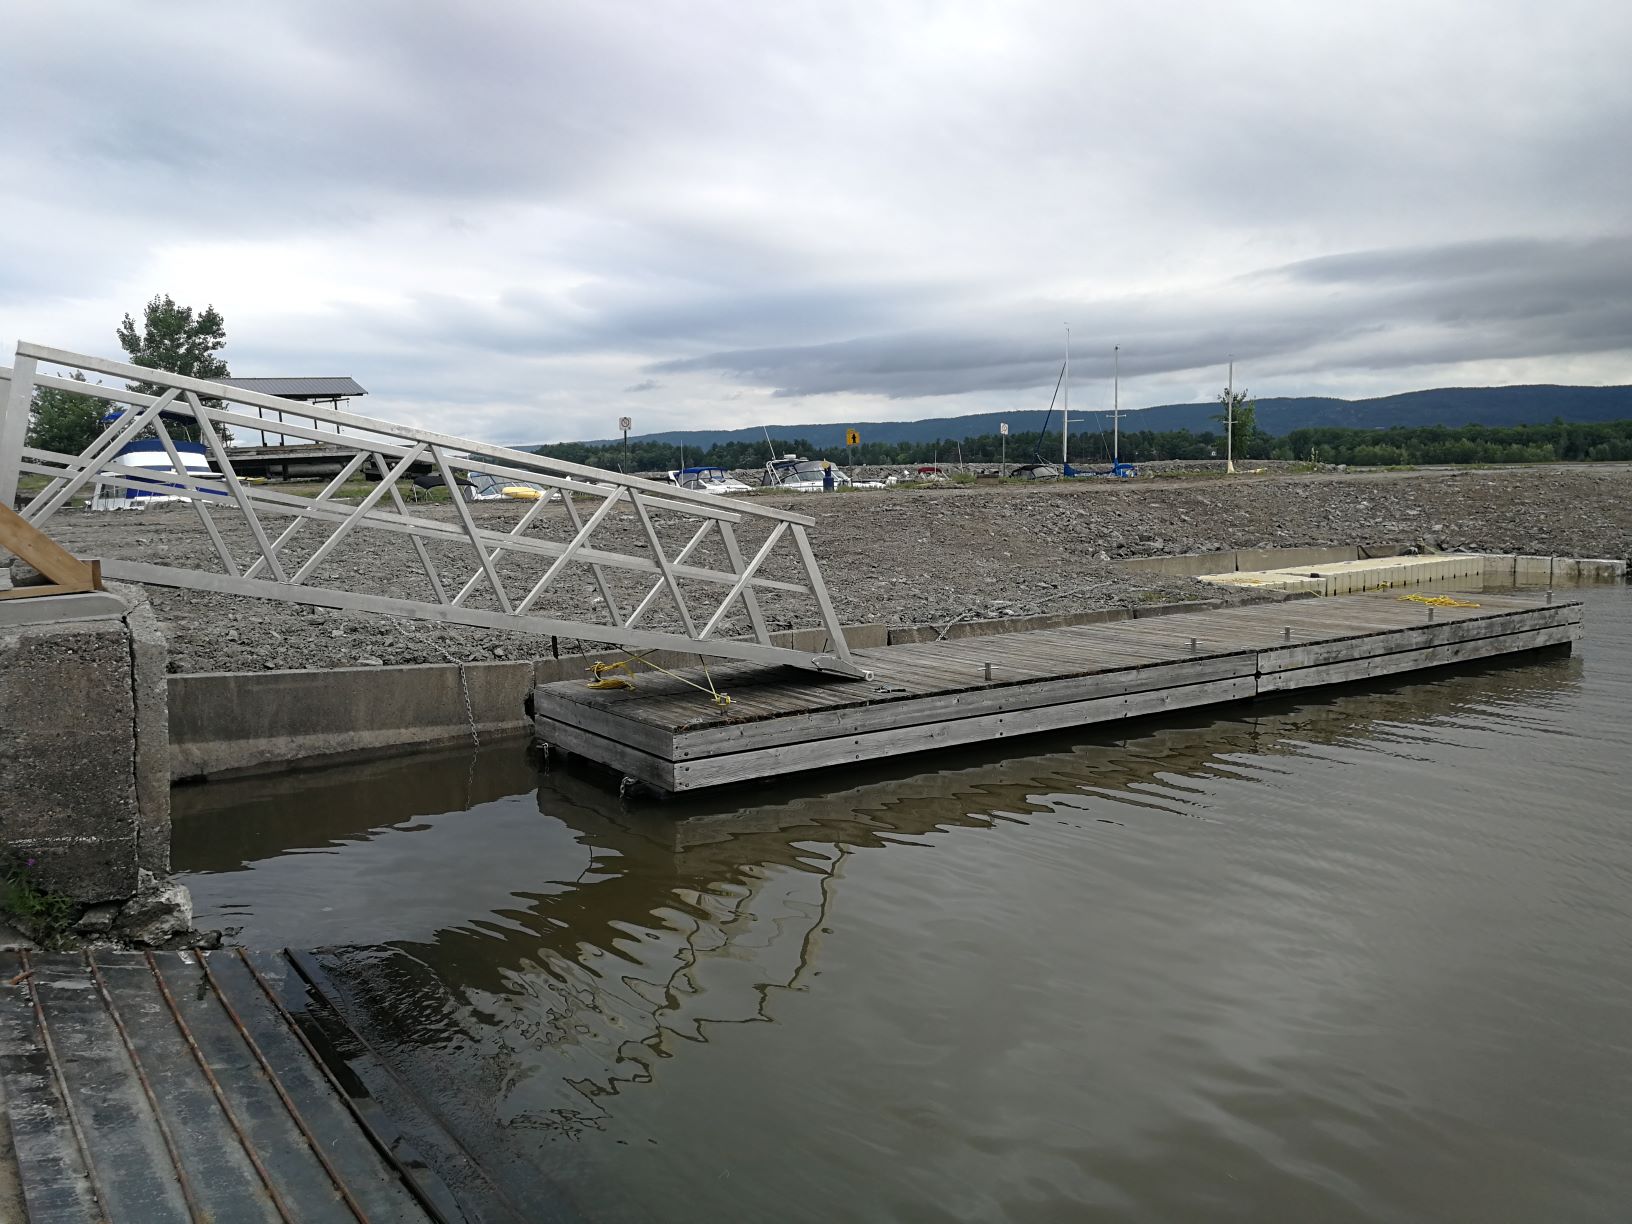 New side dock